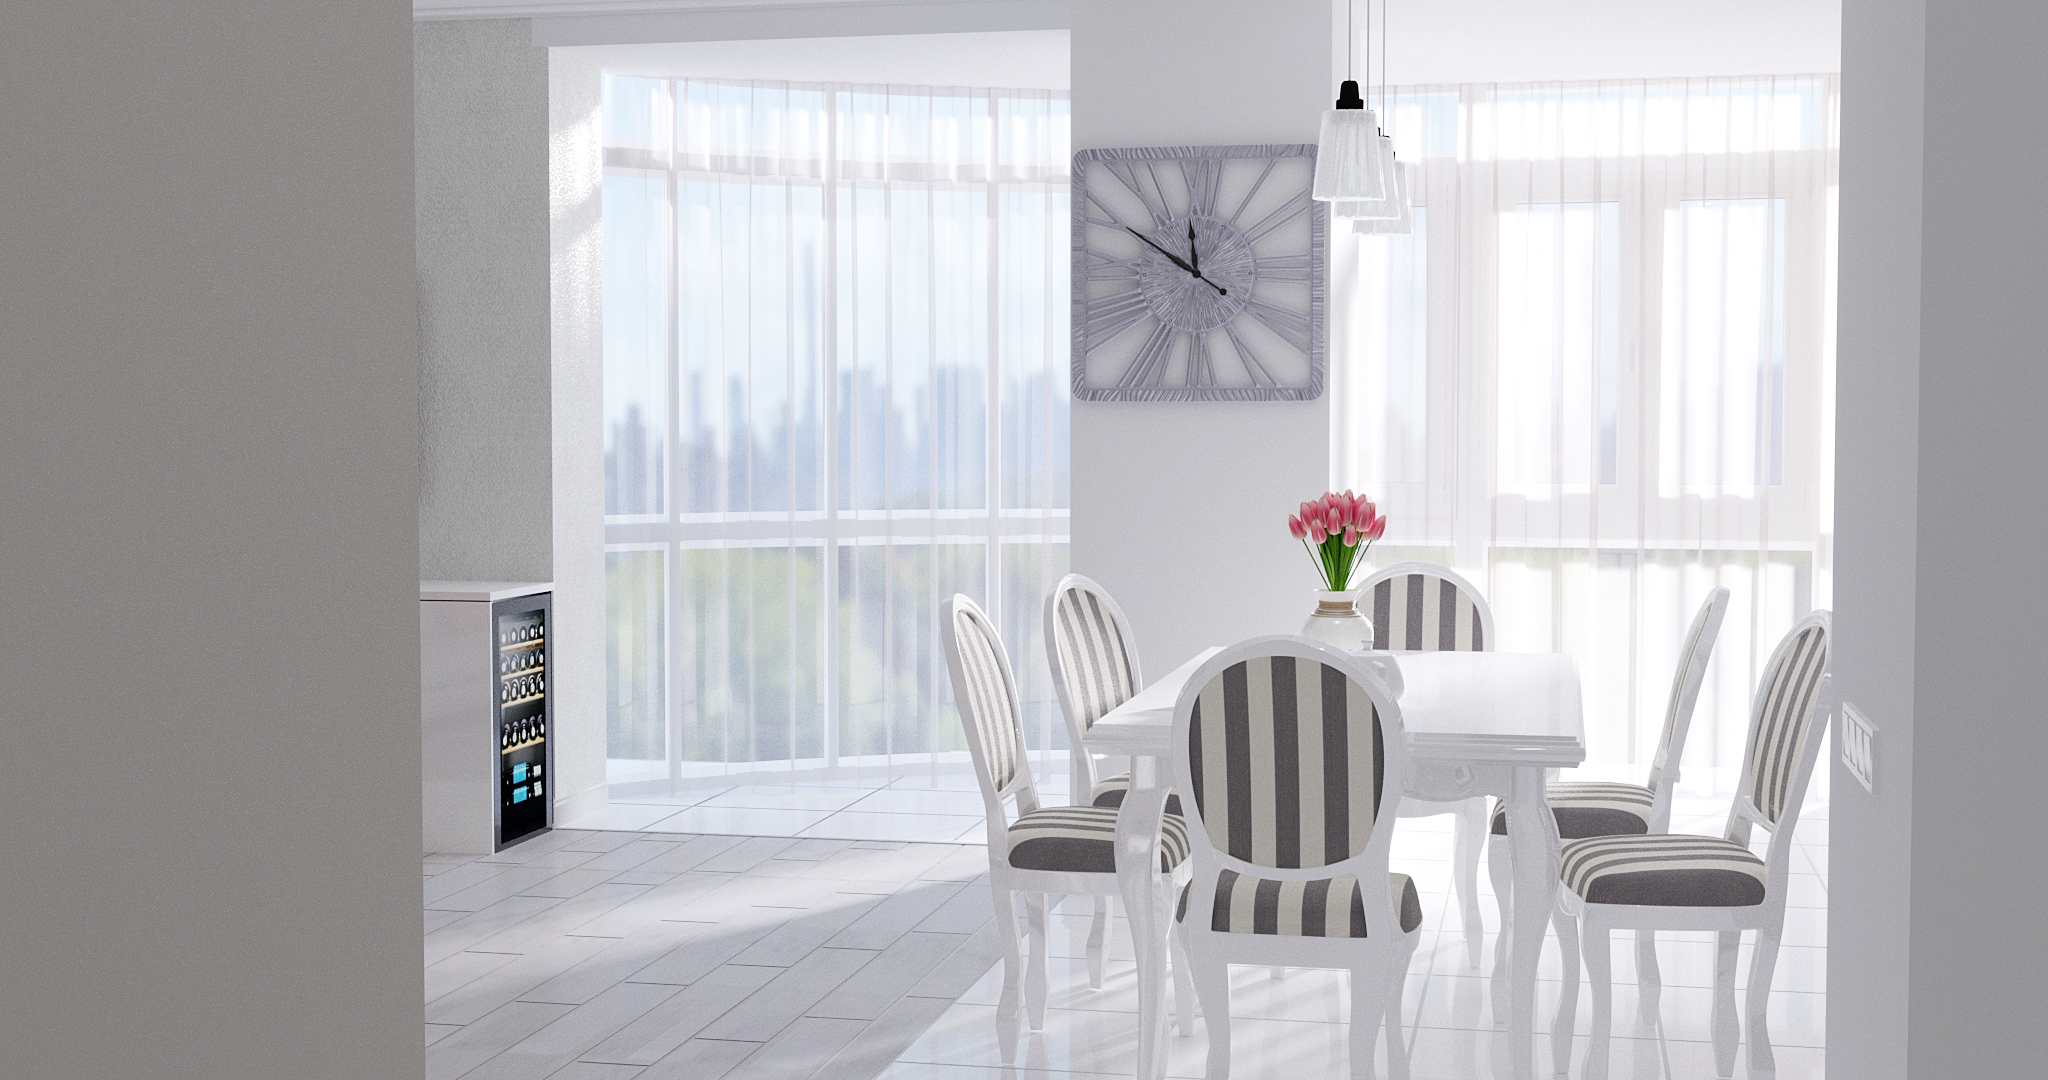 Cuisine-salon "Tendresse" dans 3d max vray 3.0 image